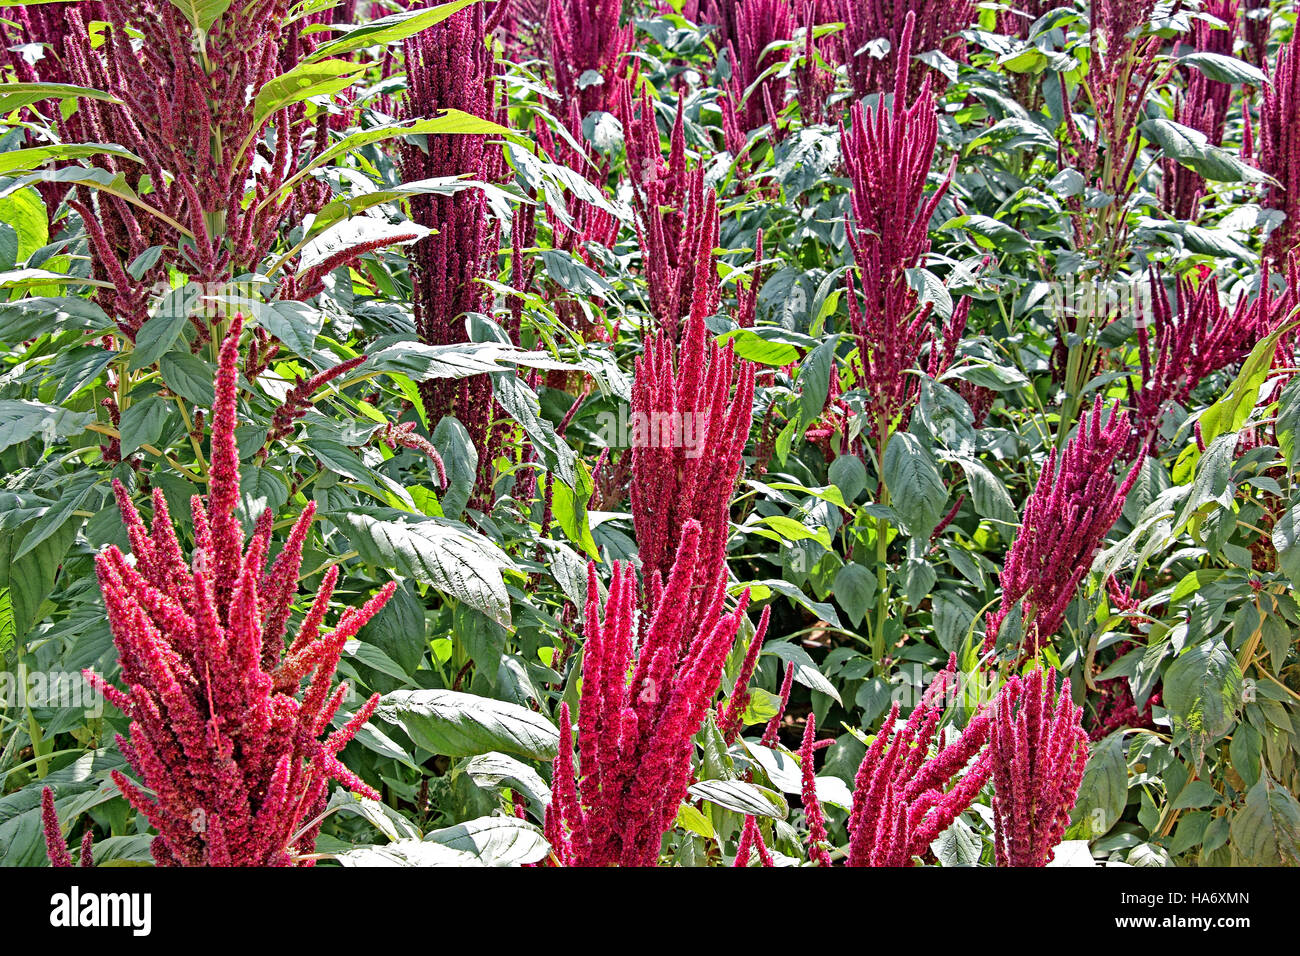 Verde india amaranto plantas con flores rojas en el campo. El amaranto se cultiva como verduras, cereales y plantas ornamentales. Género Amaranthus. Foto de stock